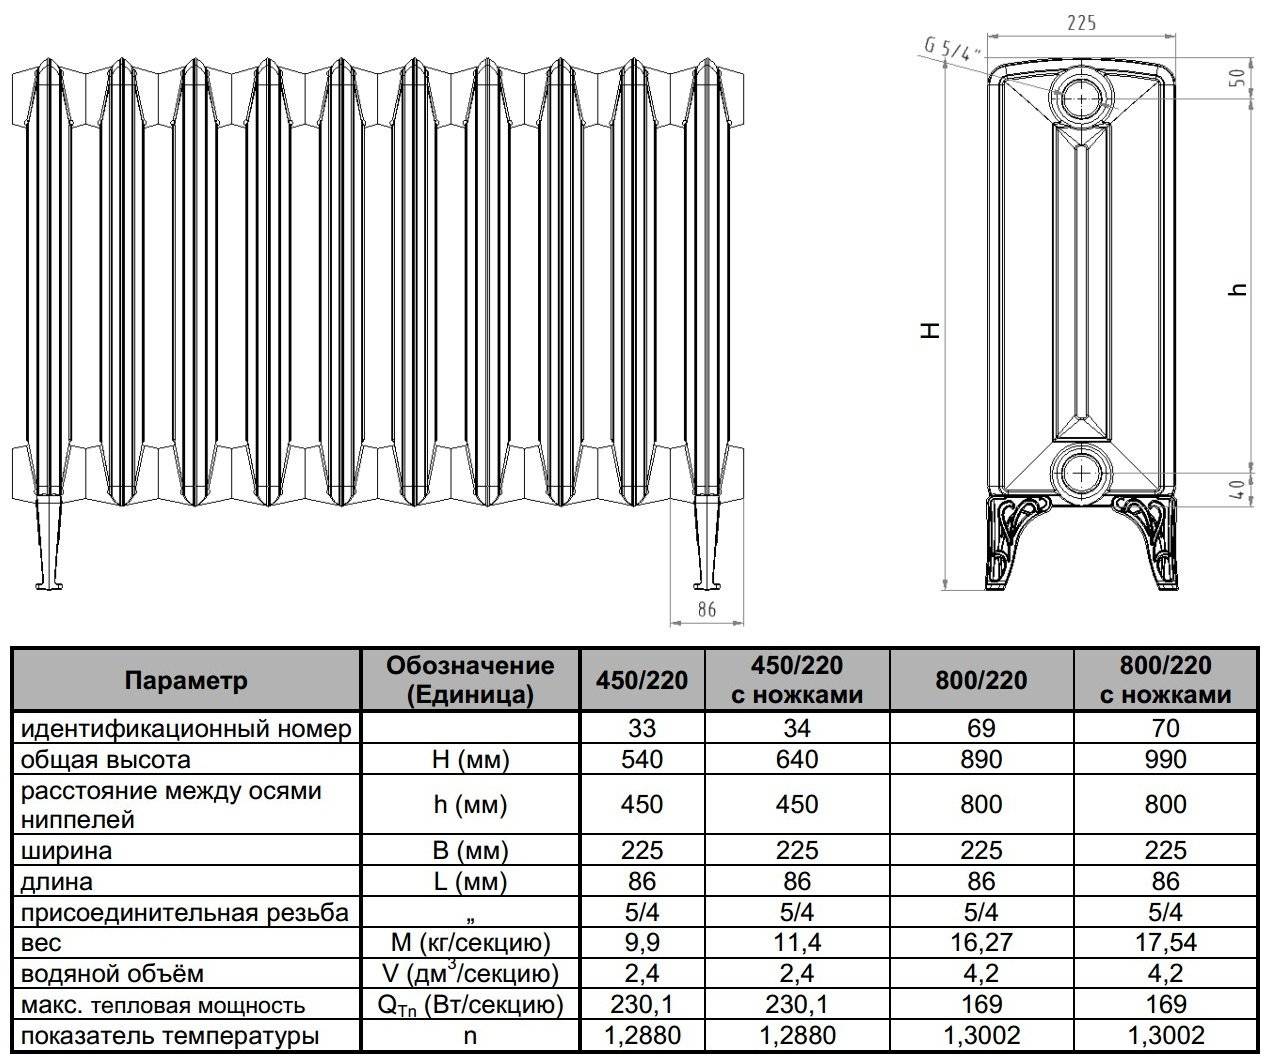 Размеры и тепловая мощность чугунных радиаторов